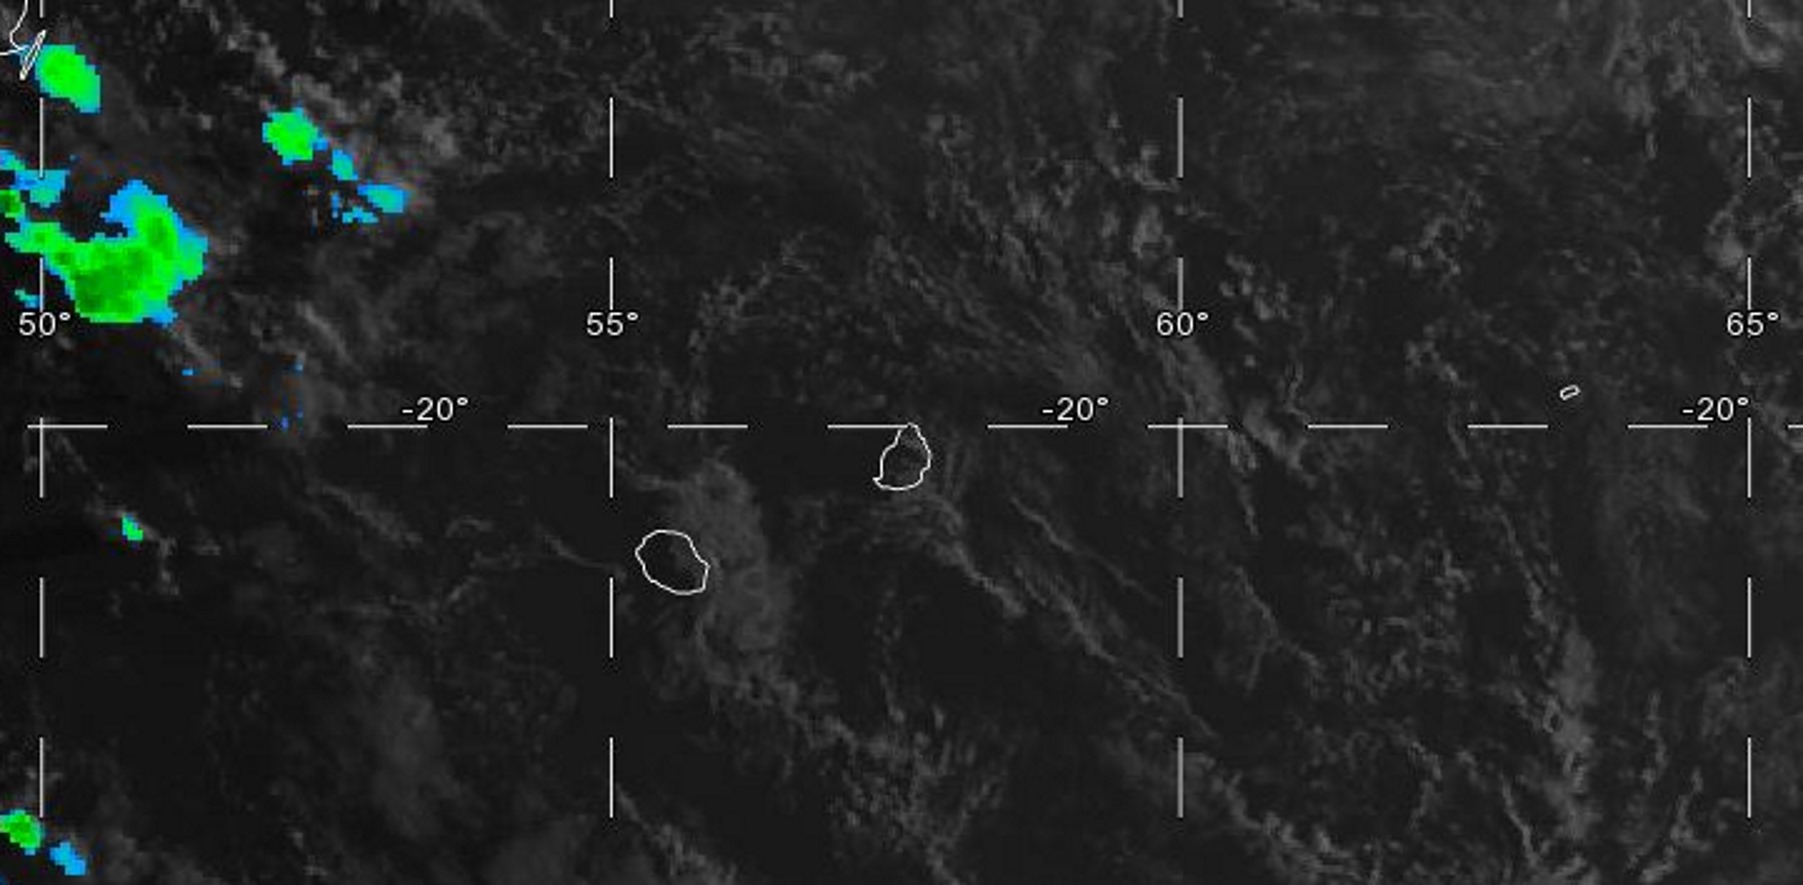 07h: les premières images dans le canal visible(lumière du jour) ne montrent pas de nuages actifs dans le voisinage des Iles Soeurs. Quelques nuages portés par les vents d'est touchent en ce moment les régions est de la Réunion et dans une moindre mesure celles de Maurice.